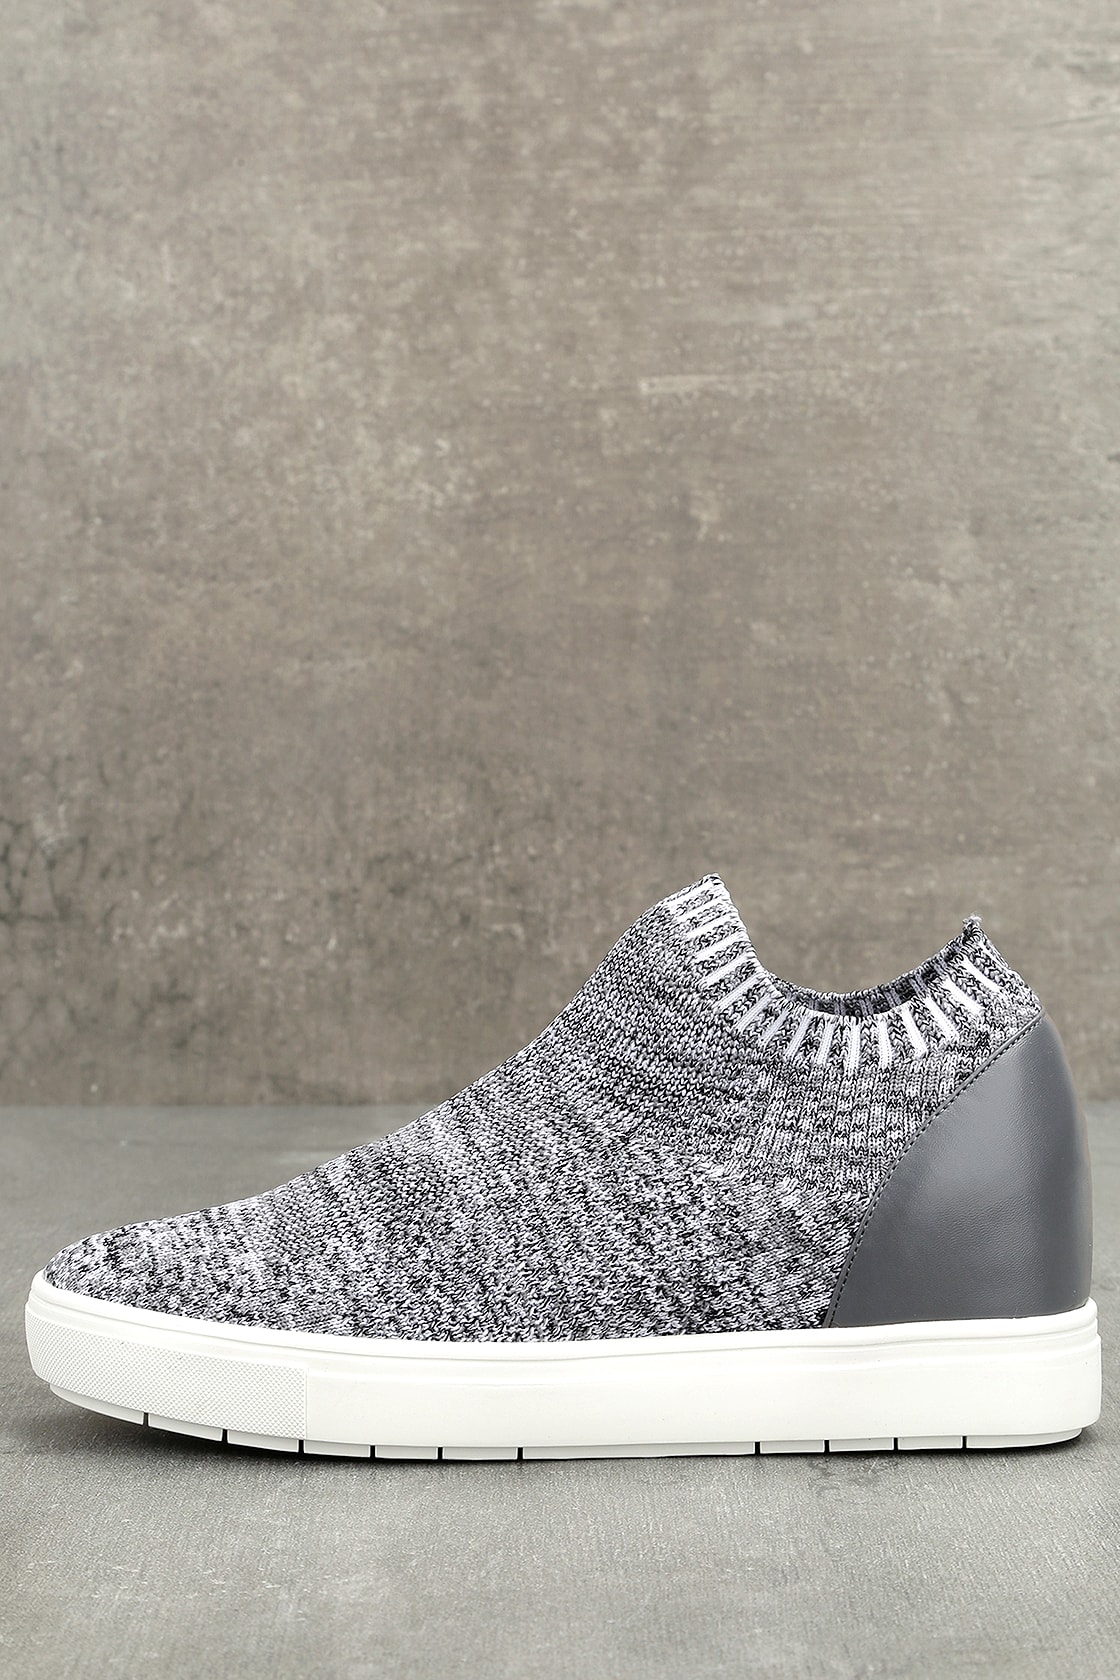 Steve Madden Sly - Grey Multi Knit Sneakers - Wedge Sneakers - Lulus